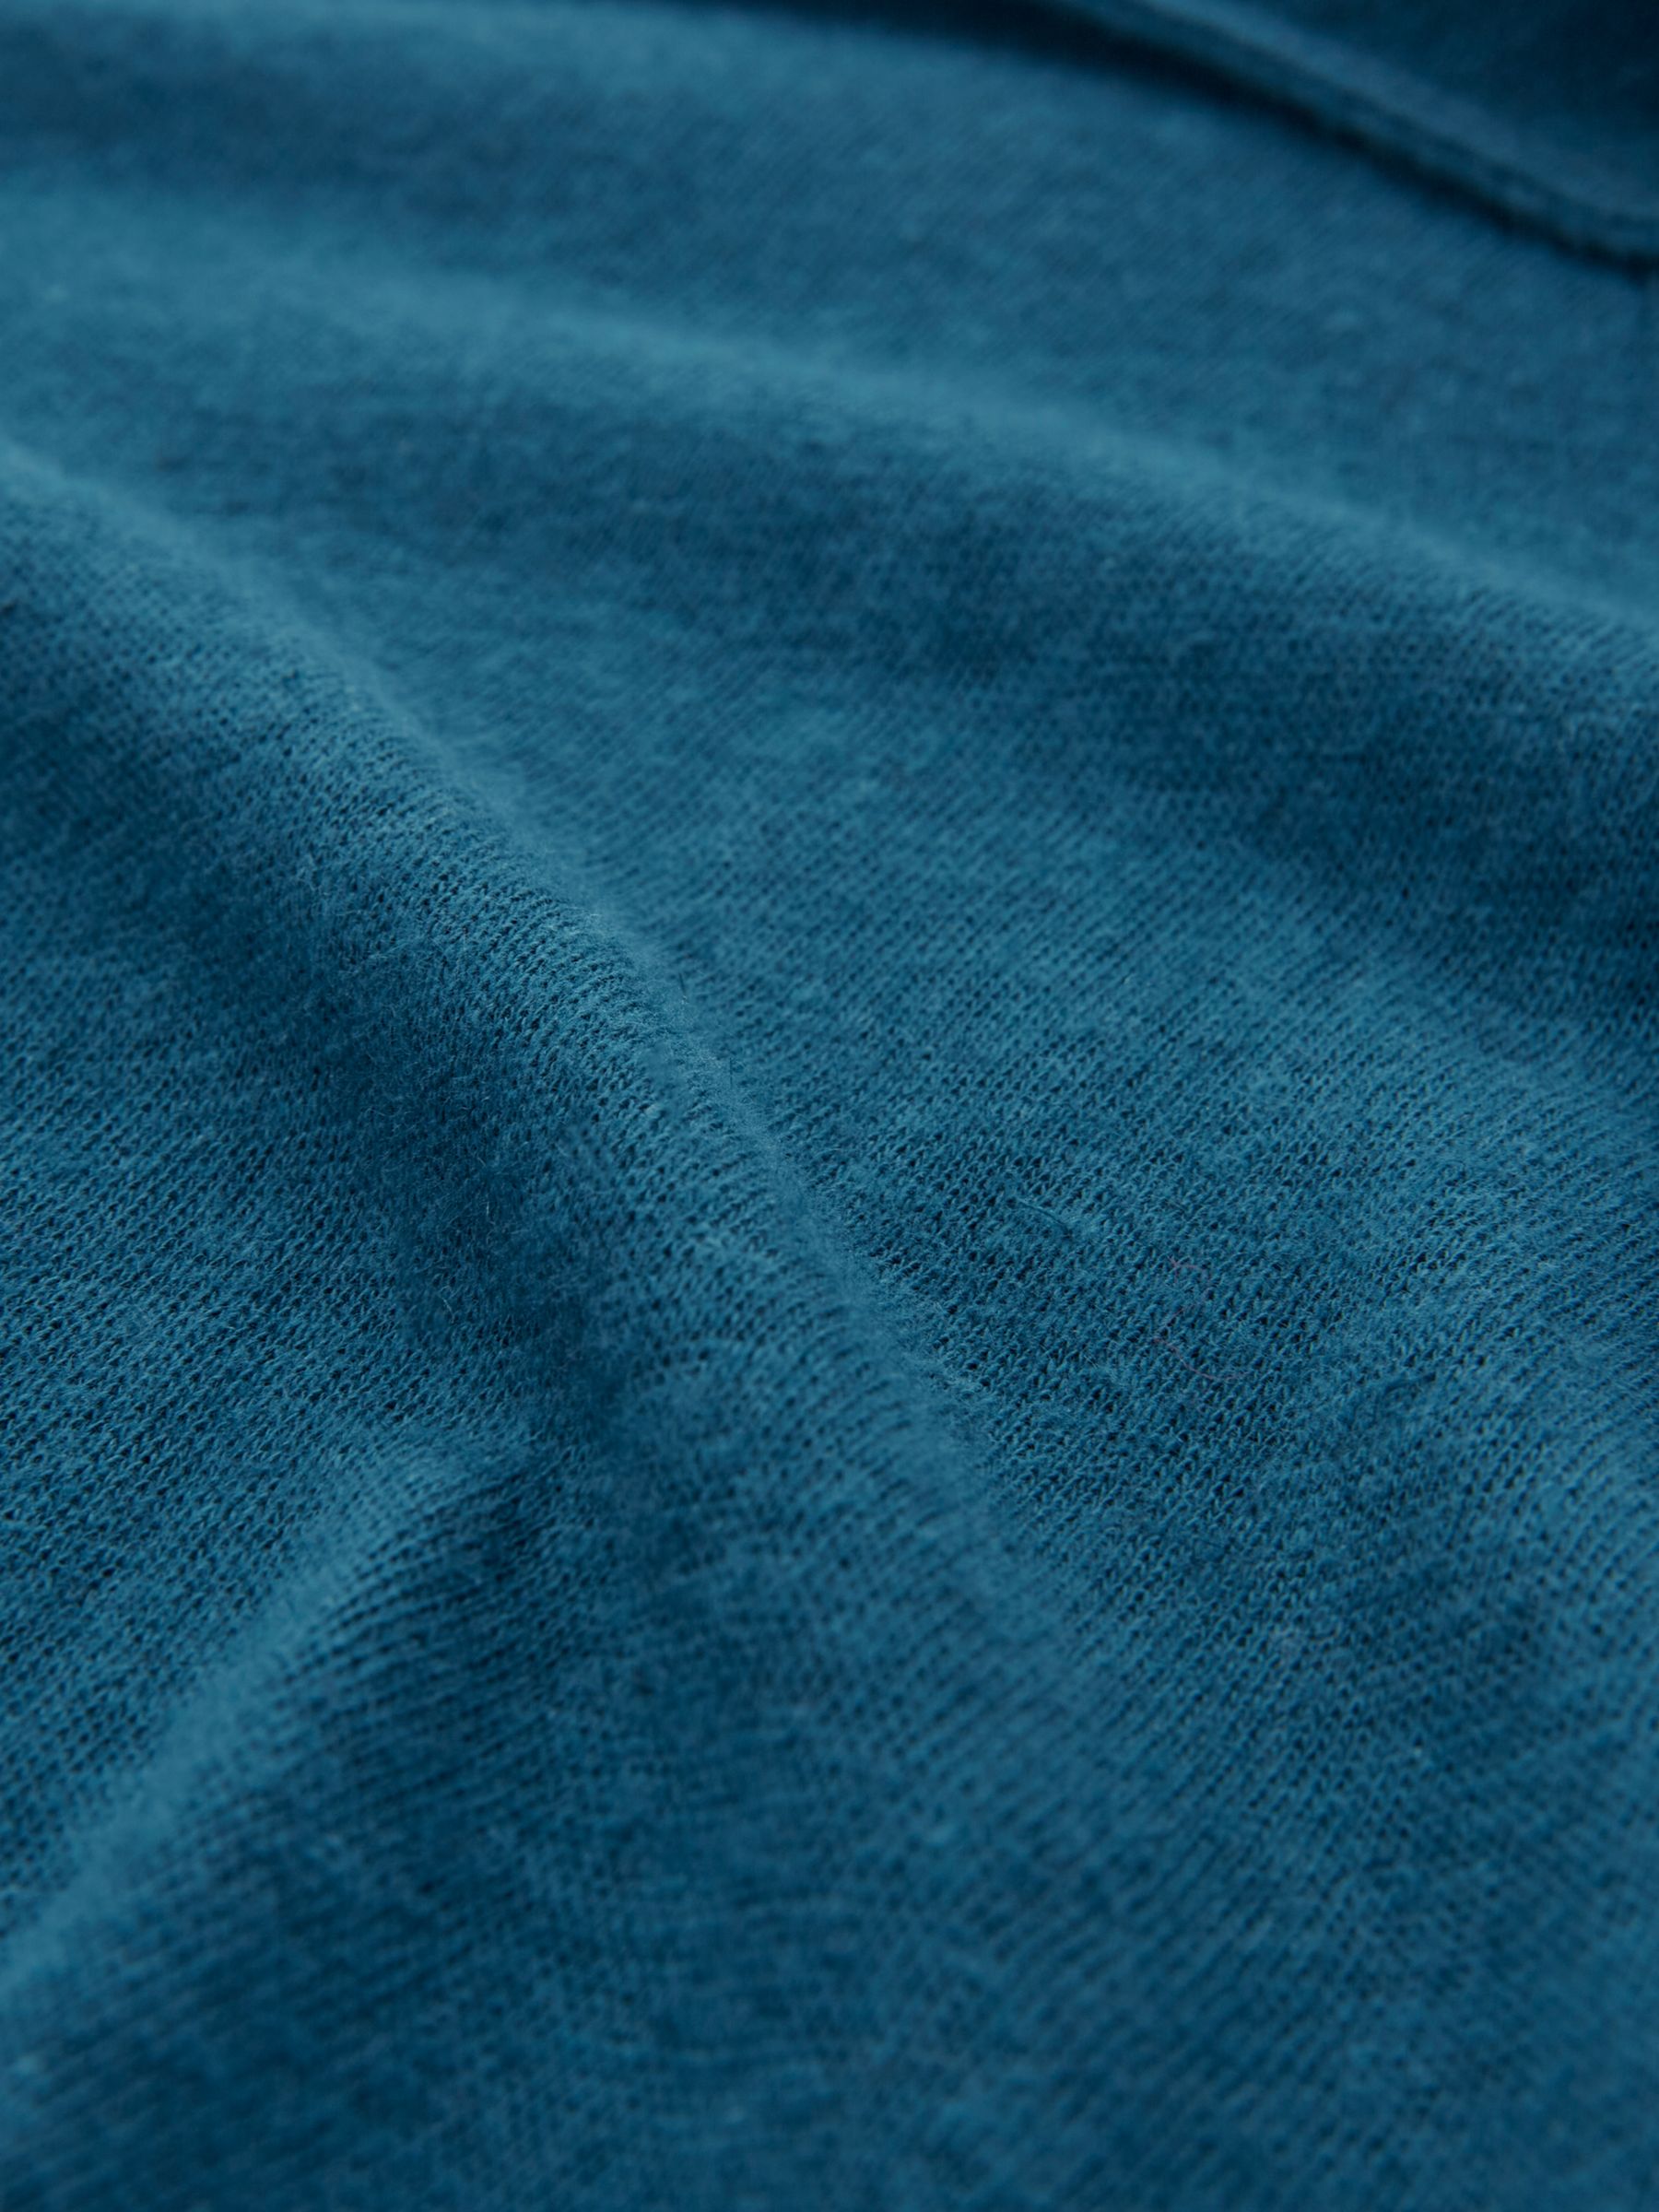 Celtic & Co. Linen/Cotton Short Sleeve Jumpsuit, Deep Icelandic Blue at ...